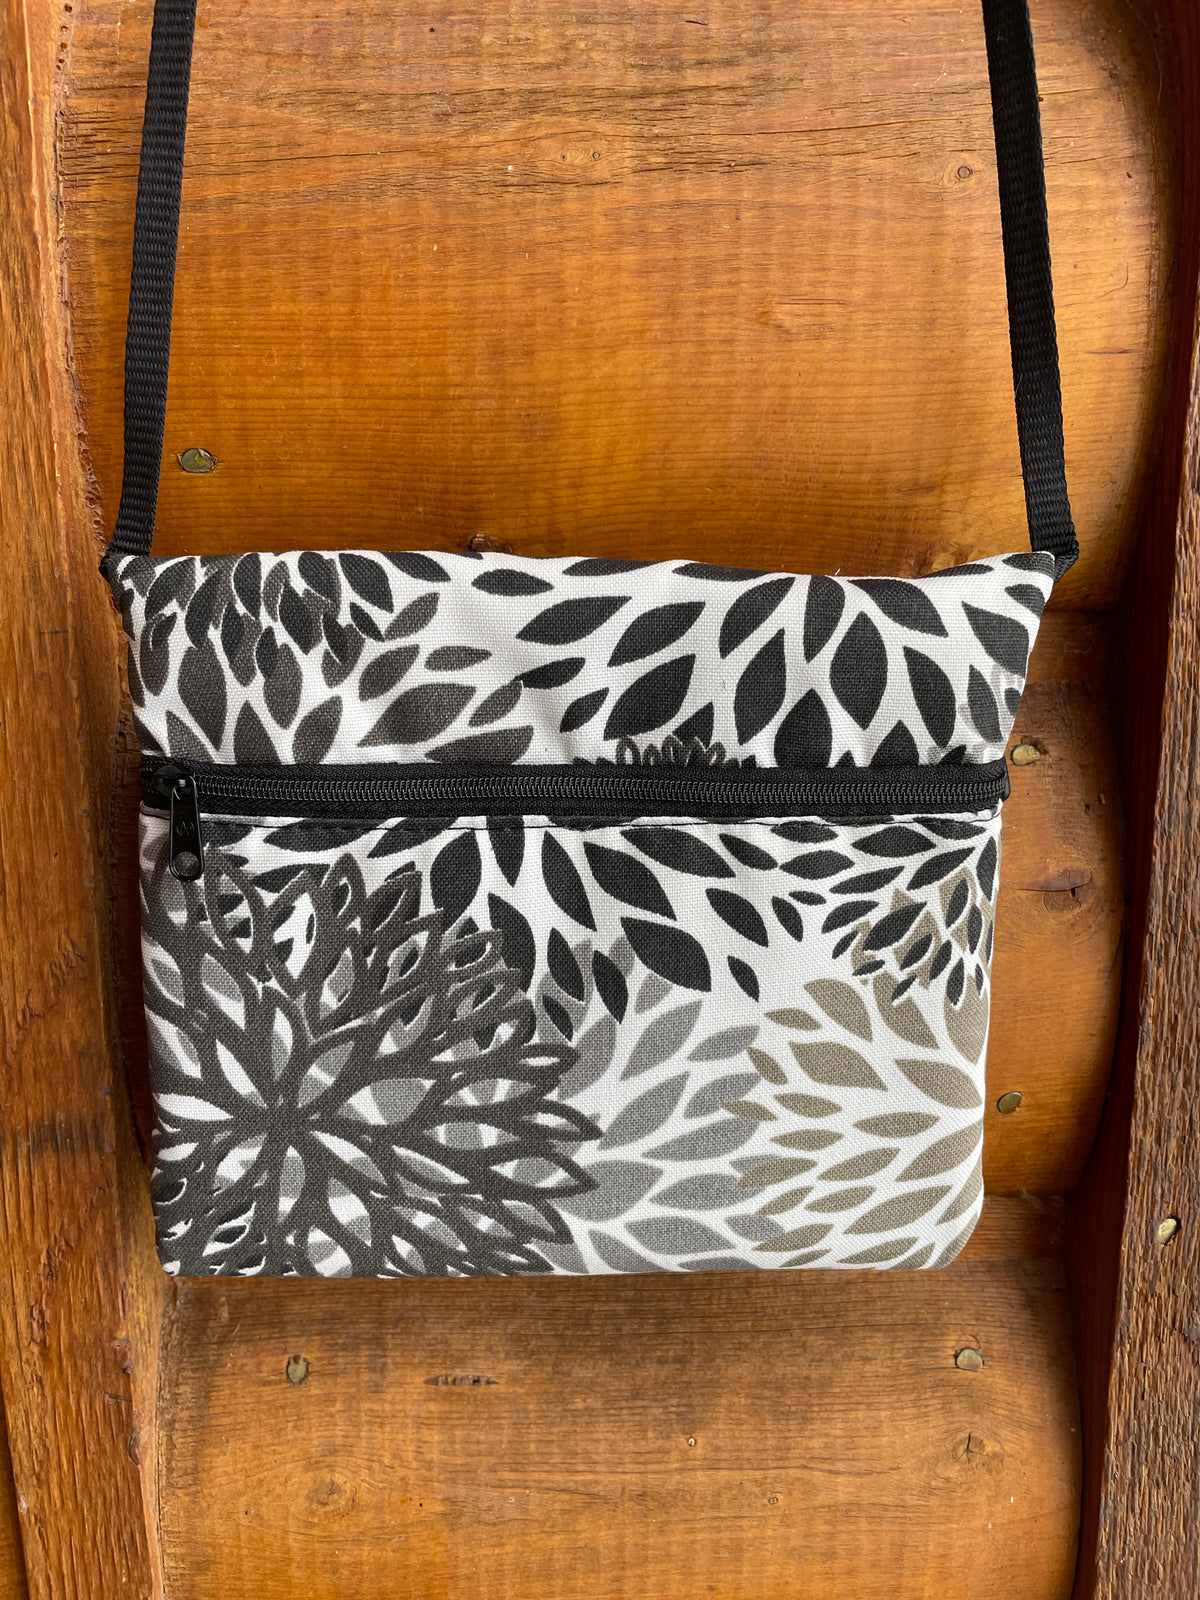 3 Zip Bag Black- Floral Print Fabric